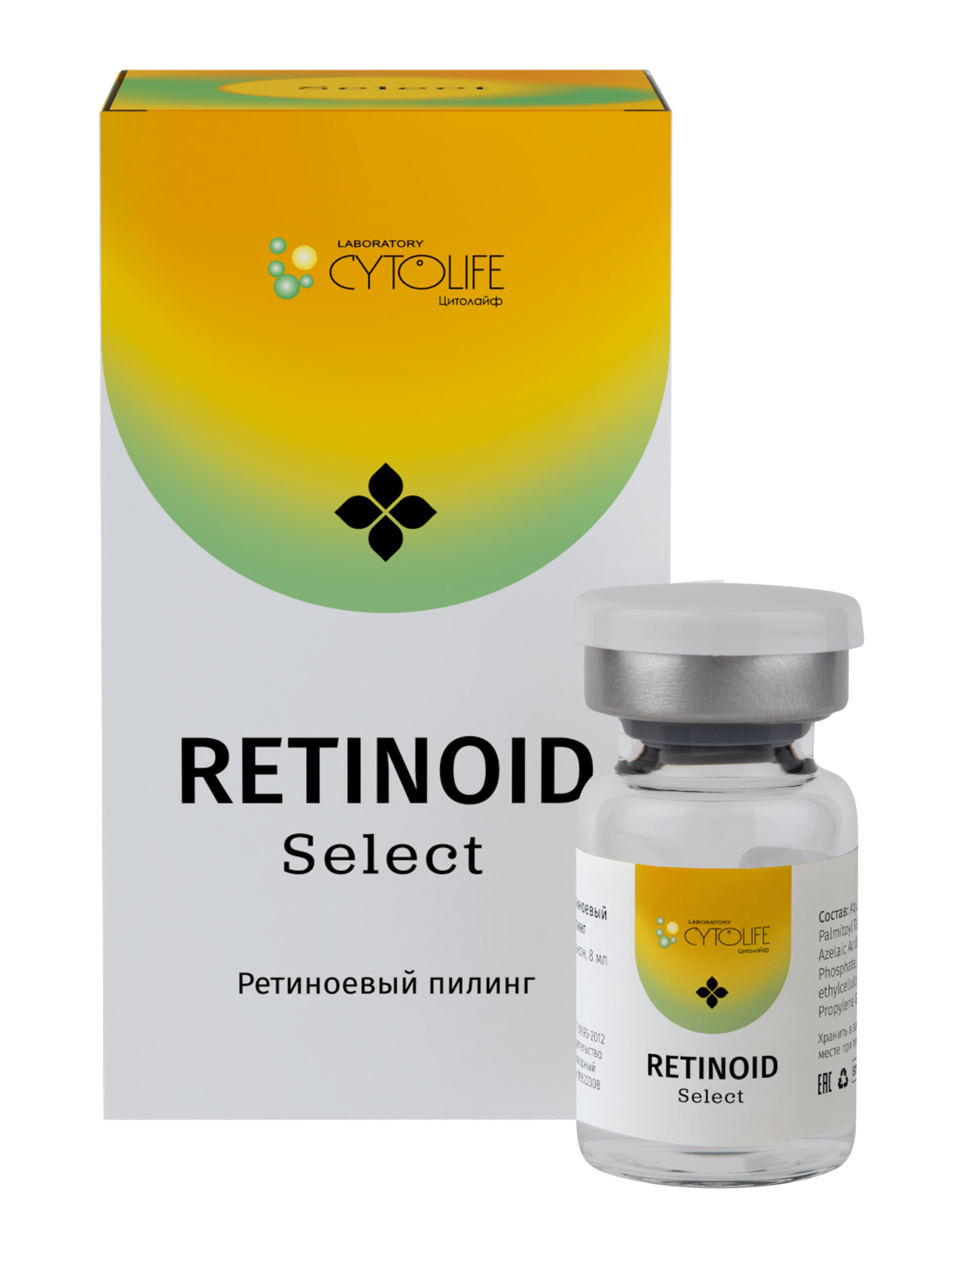 Retinoid Select